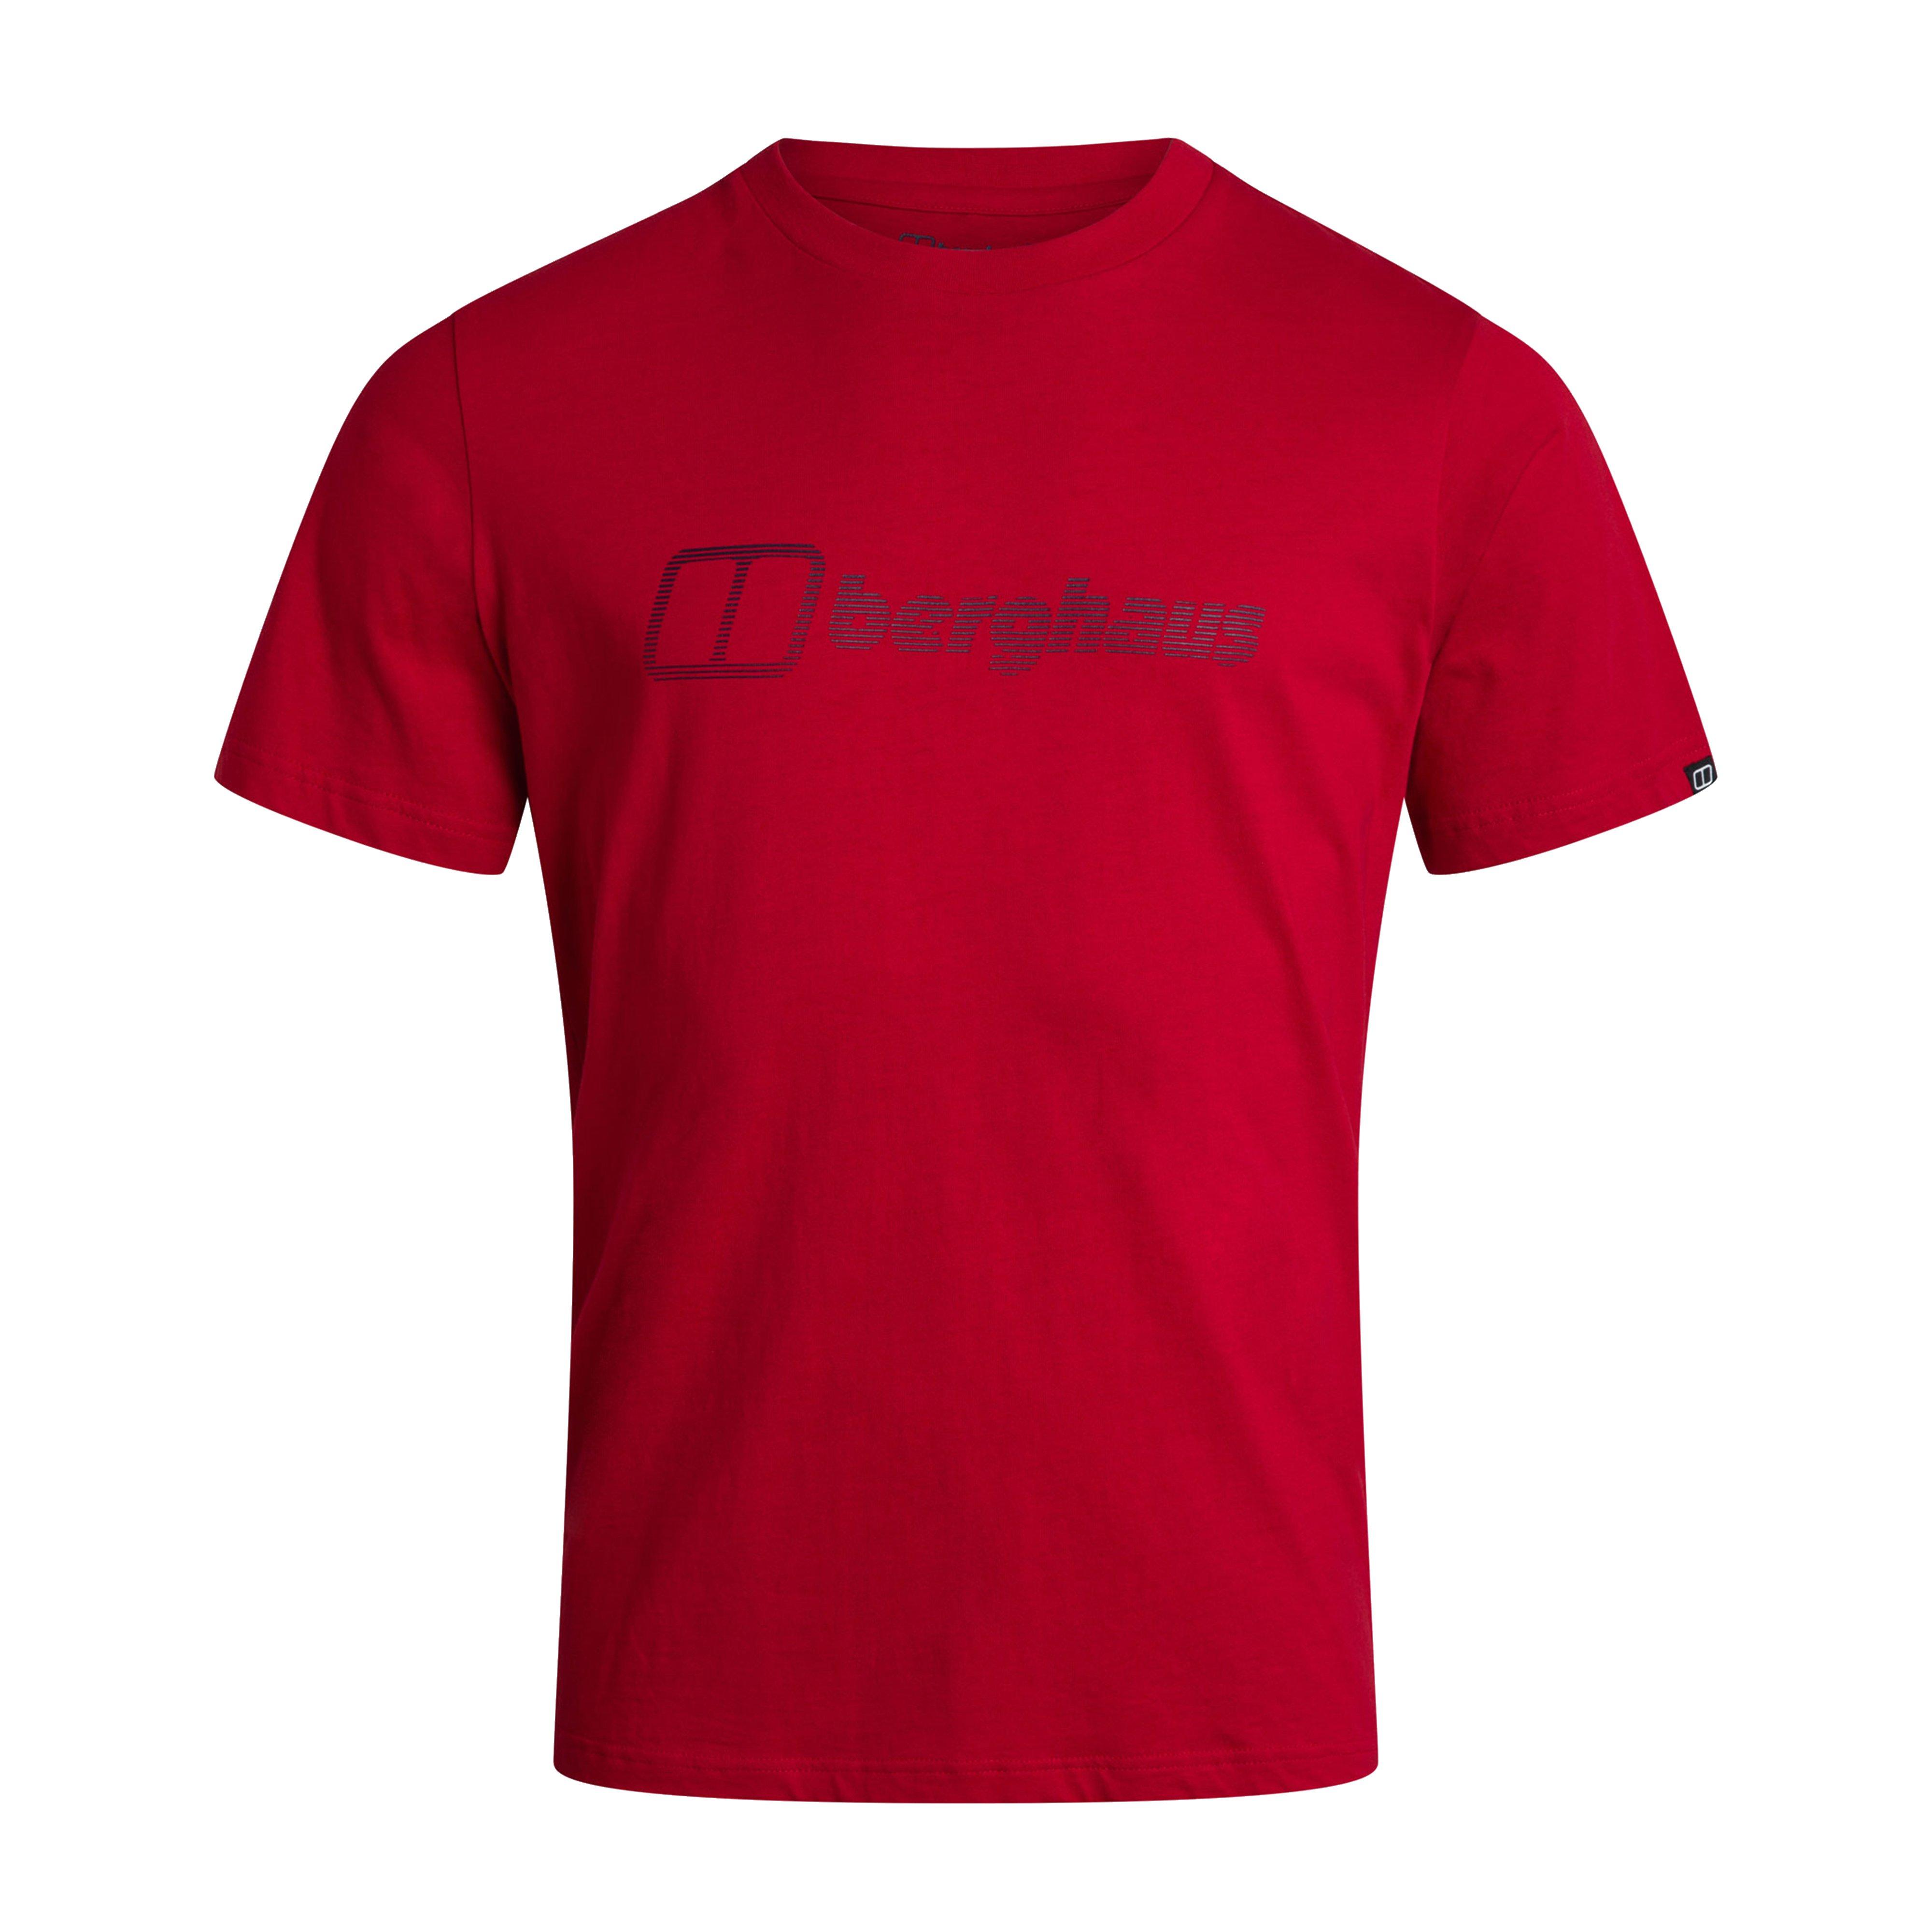 Berghaus Men’s Modern Logo T-Shirt Review